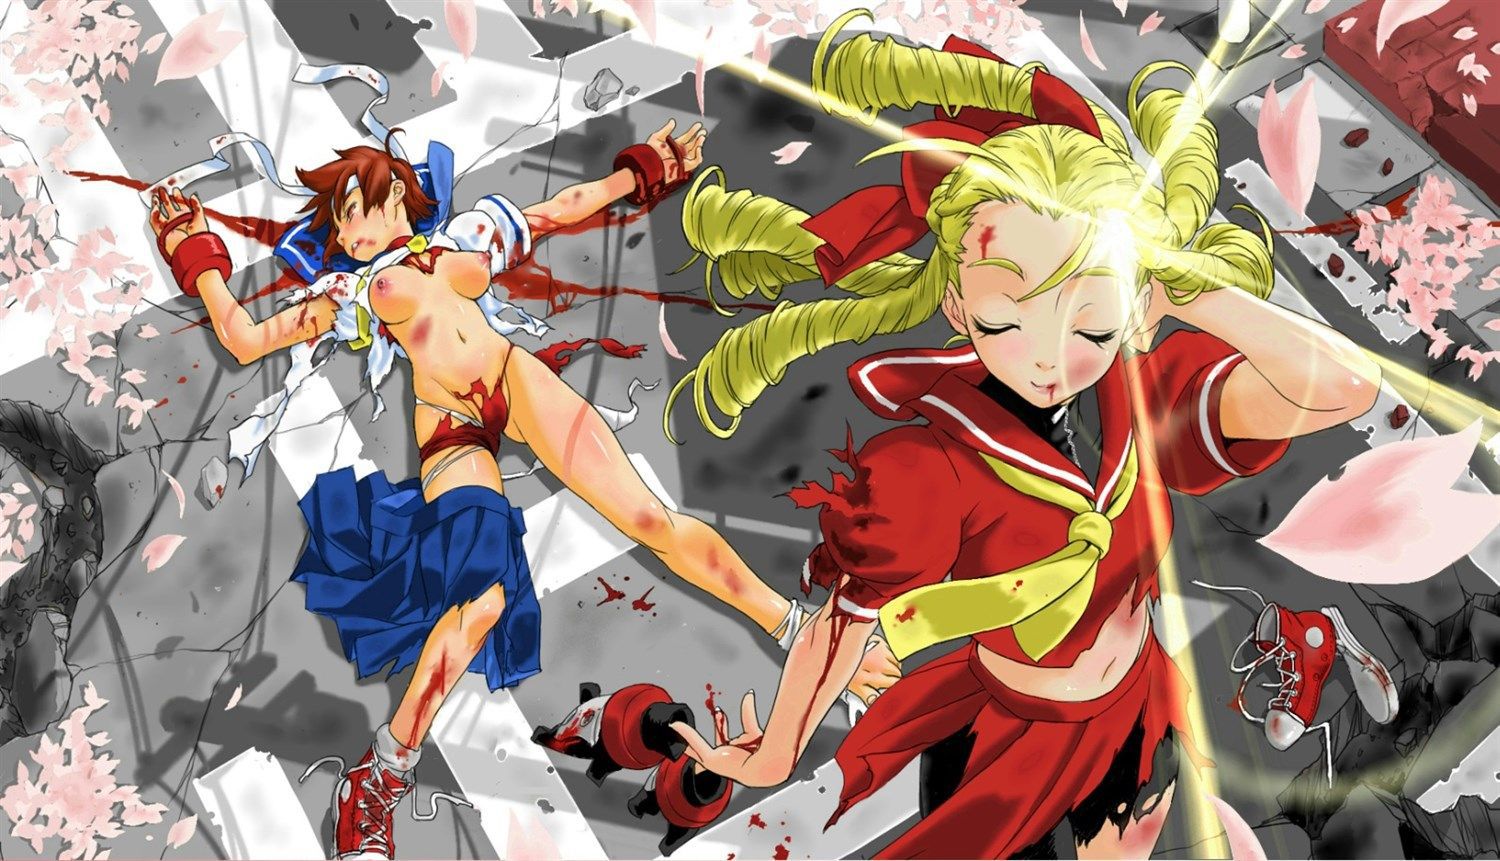 [2次] kasugano Sakura Street Fighter V, if still in red bloomers 52